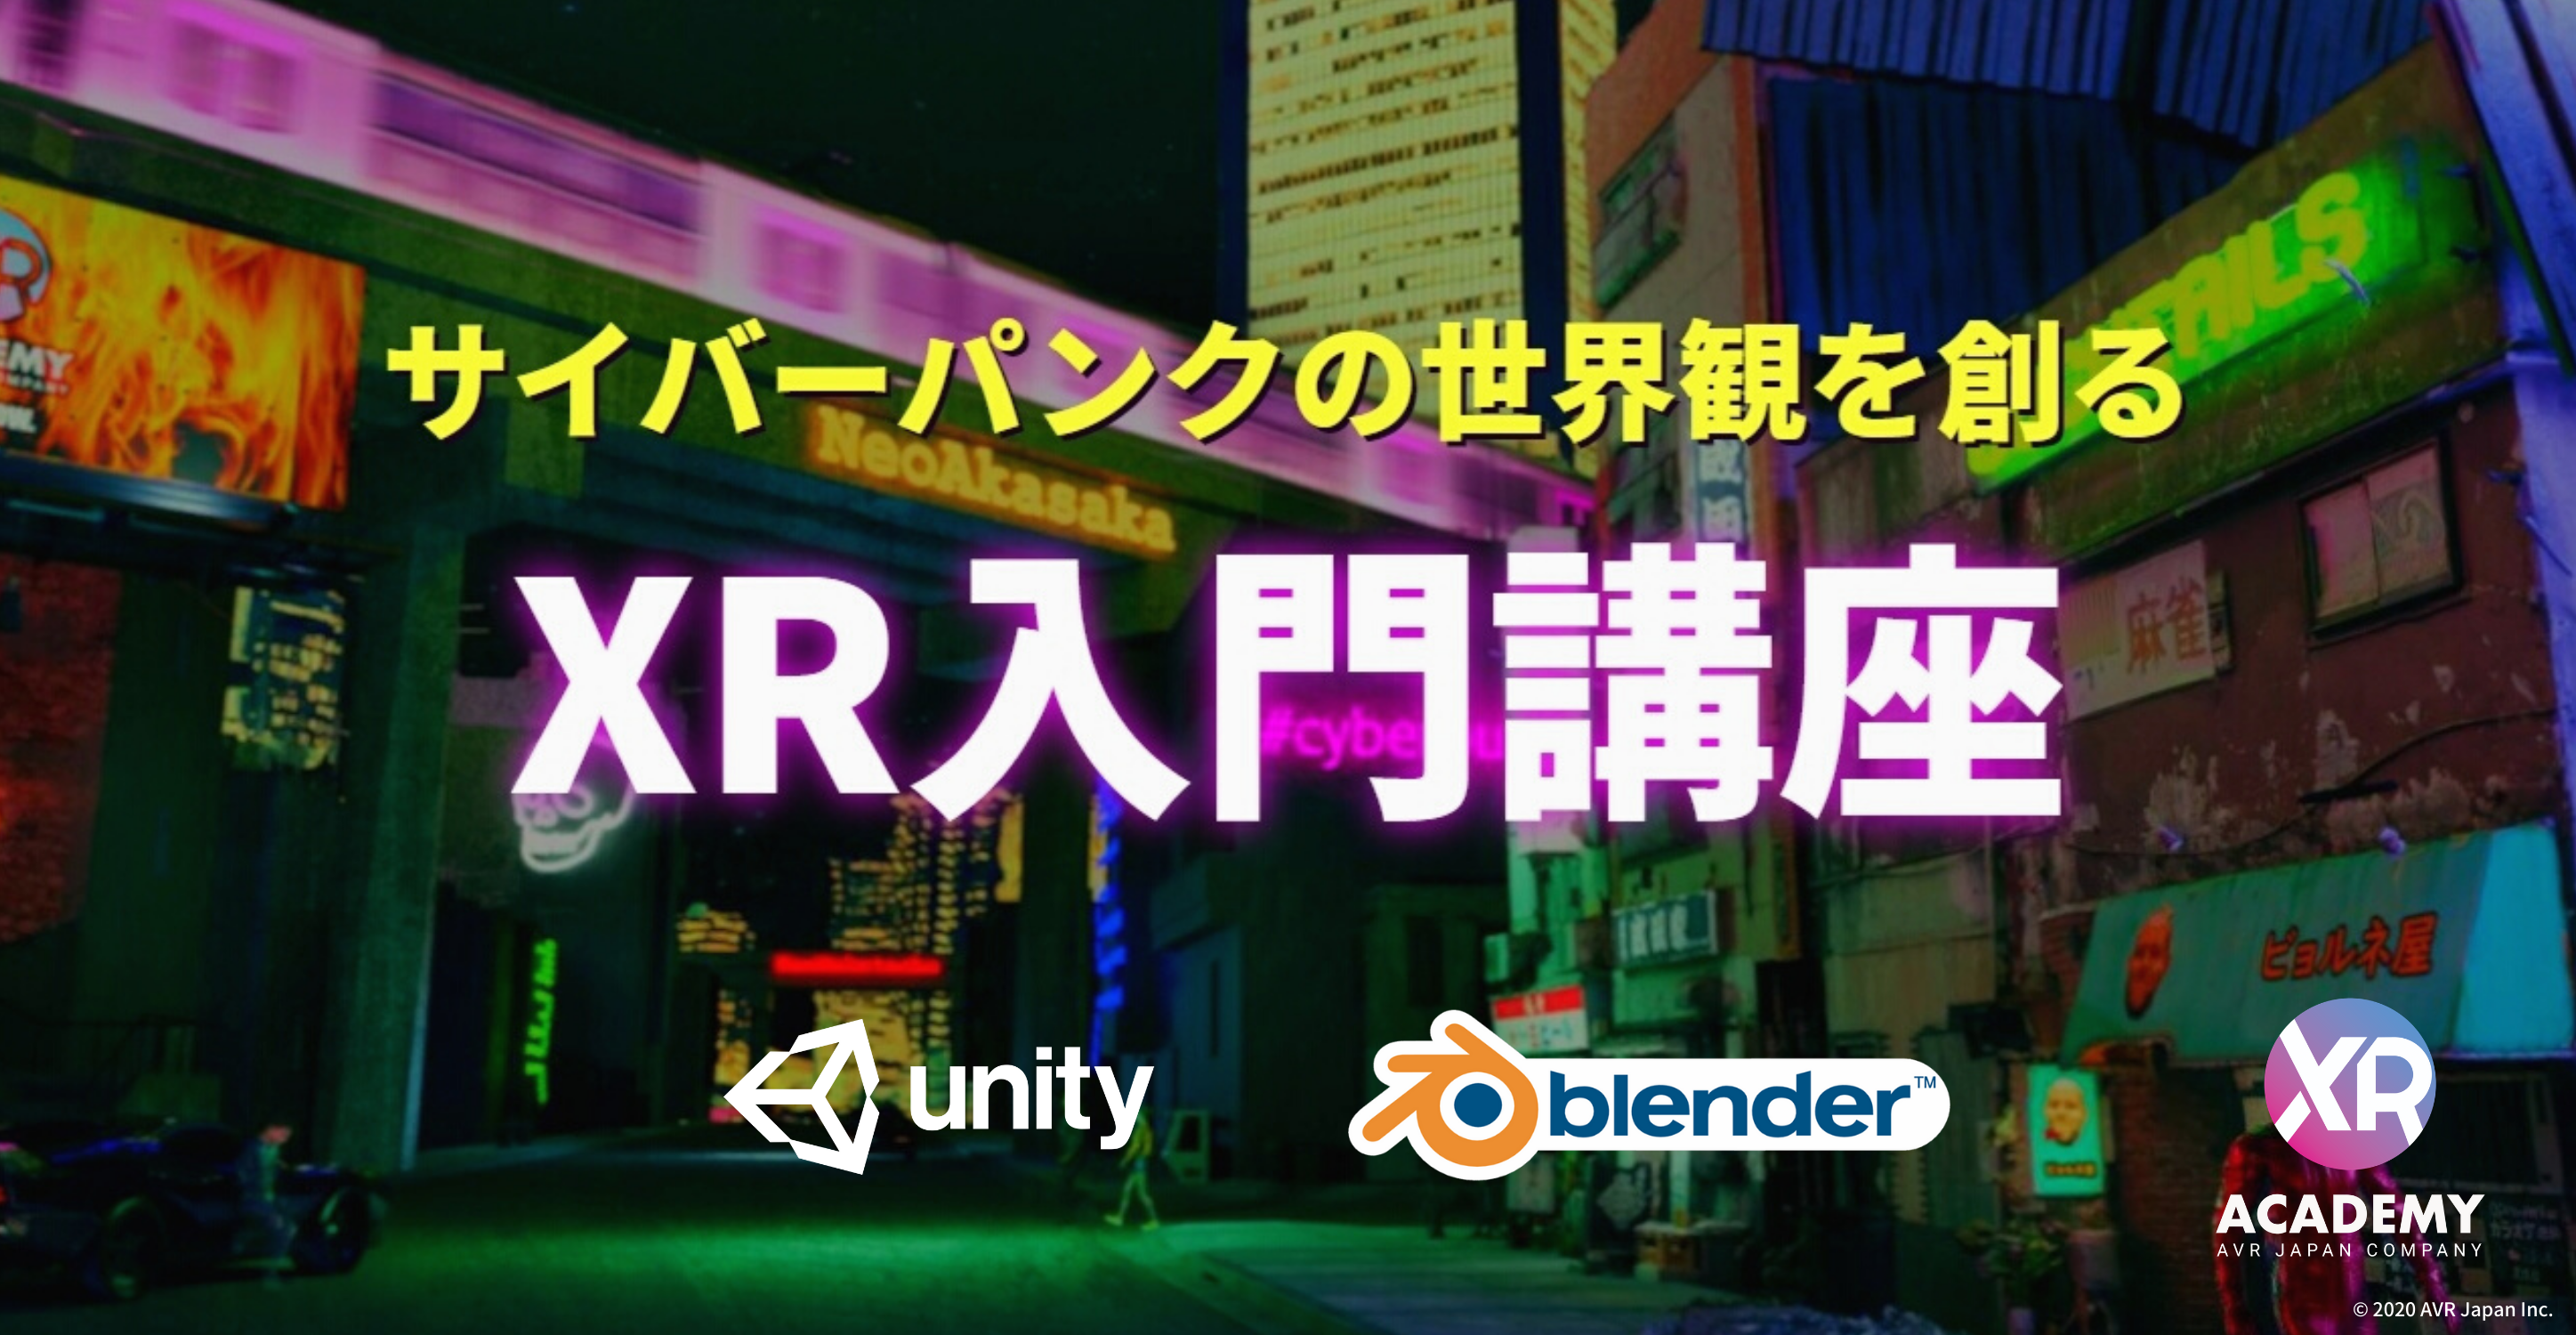 サイバーパンクの世界観を創るxr入門講座11月16日 月 より開催 Avr Japan株式会社のプレスリリース